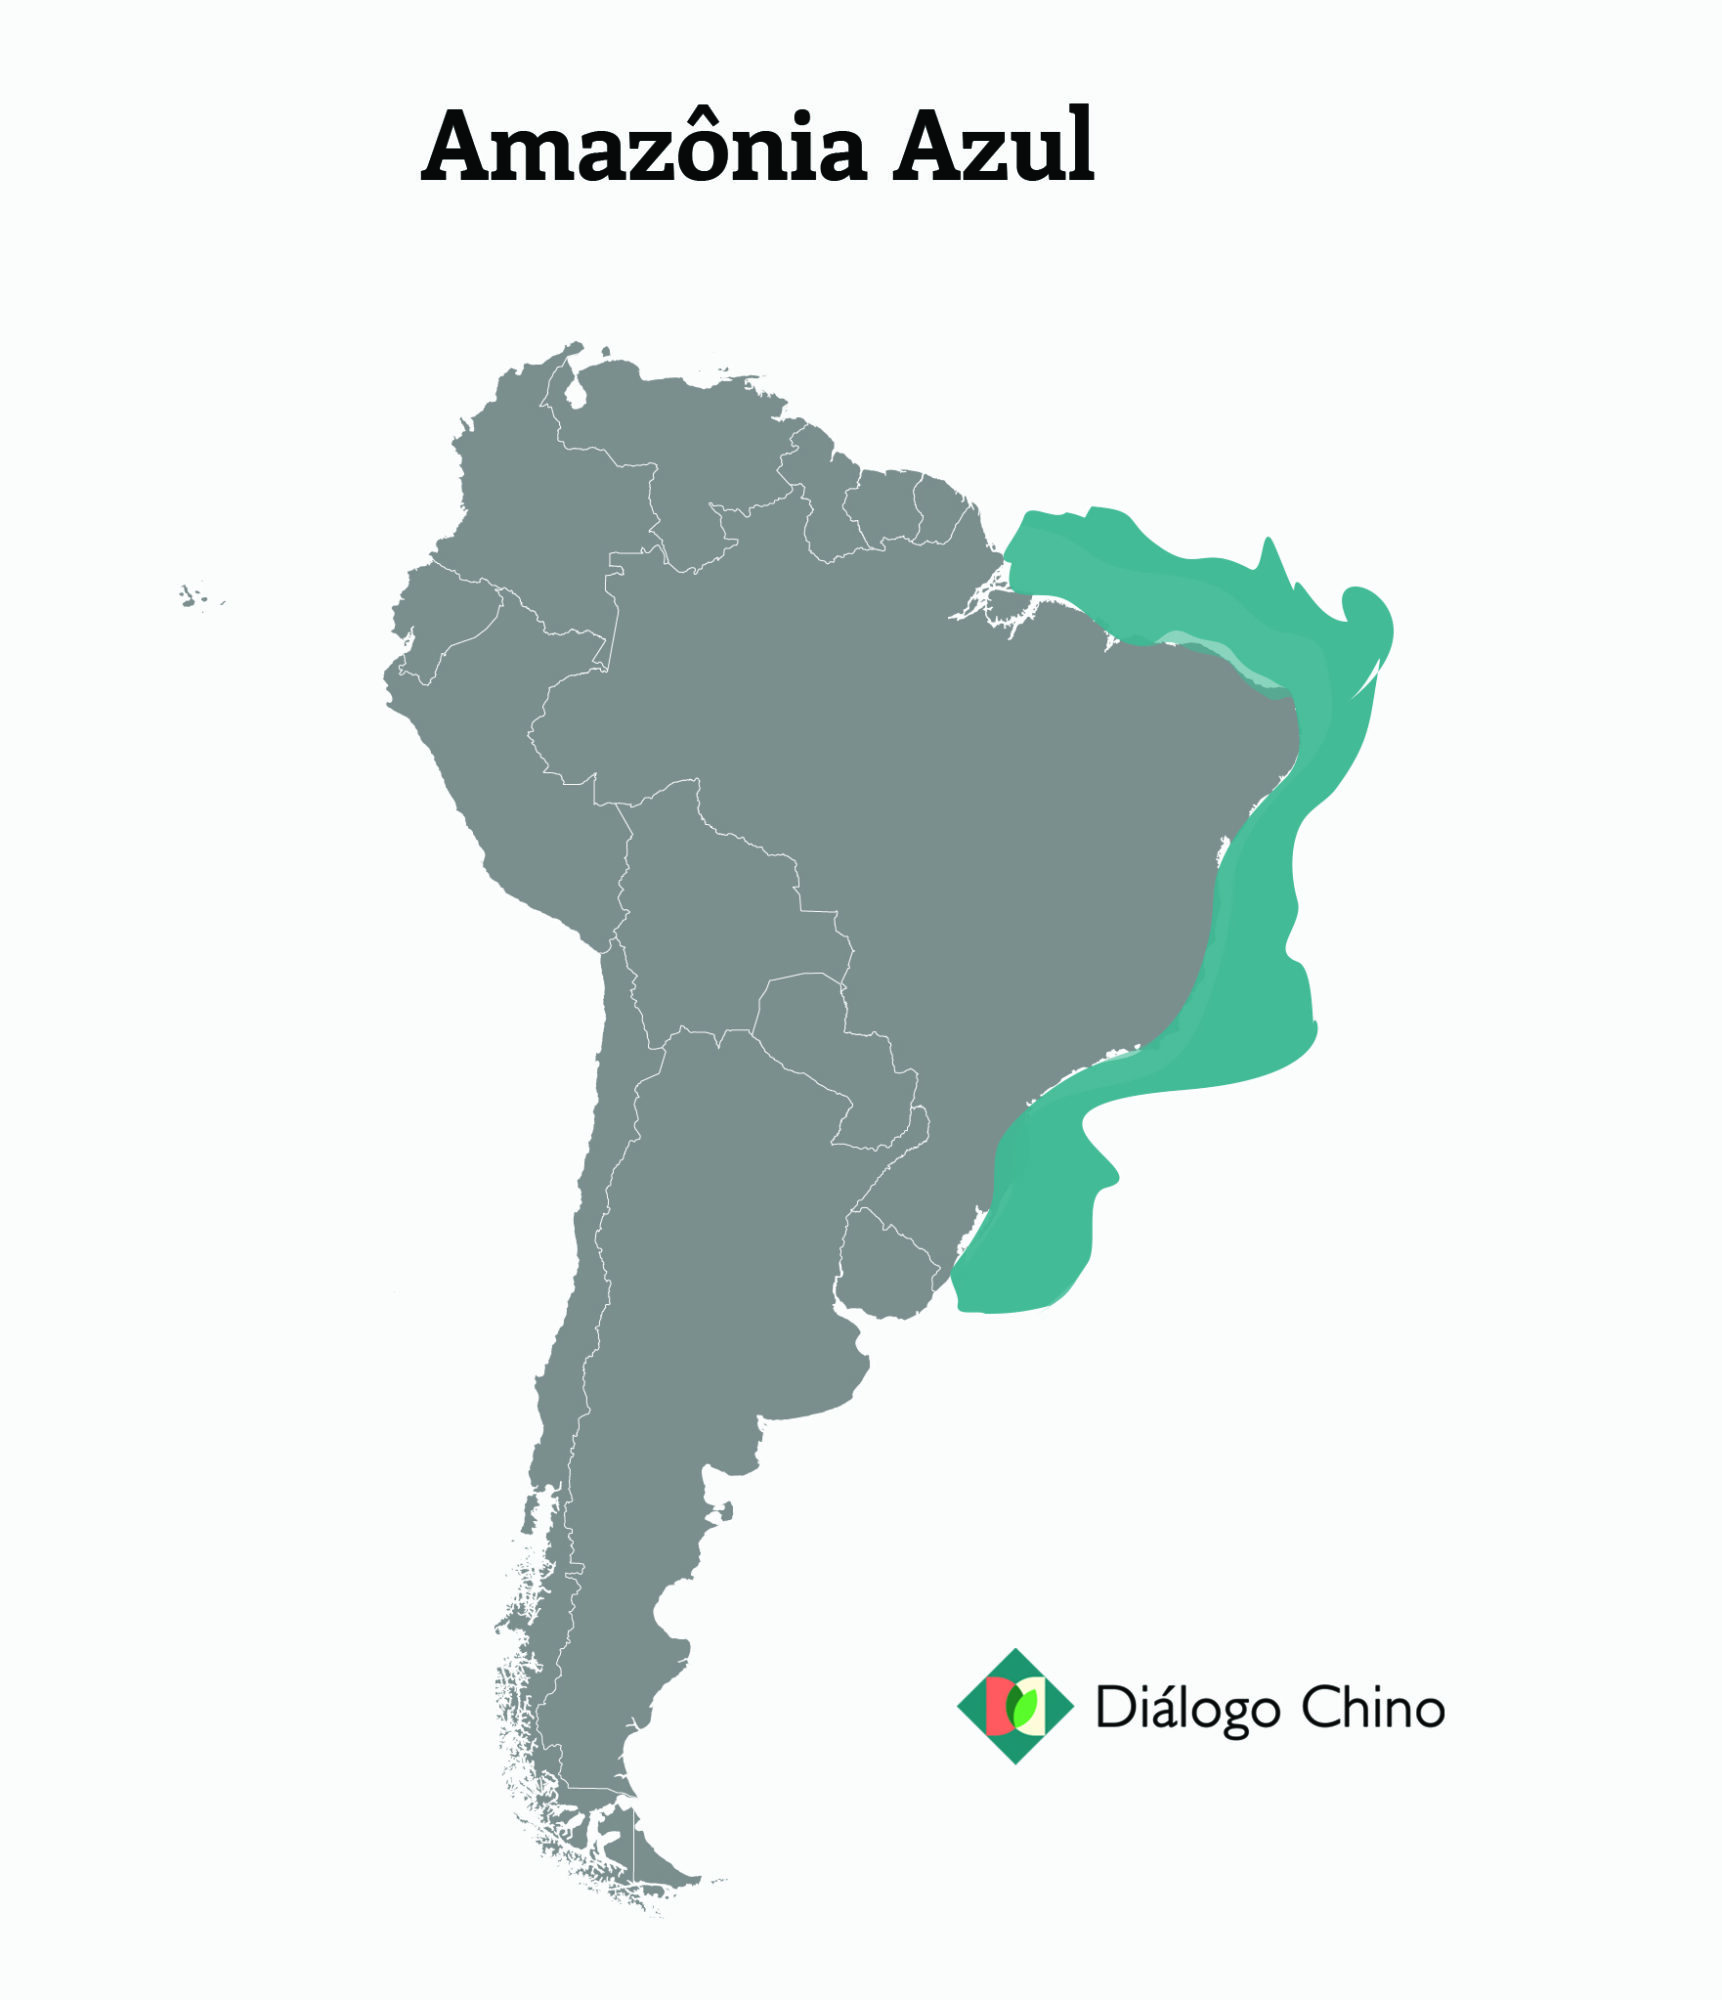 mapa da América do Sul com a Amazônia marcada em azul